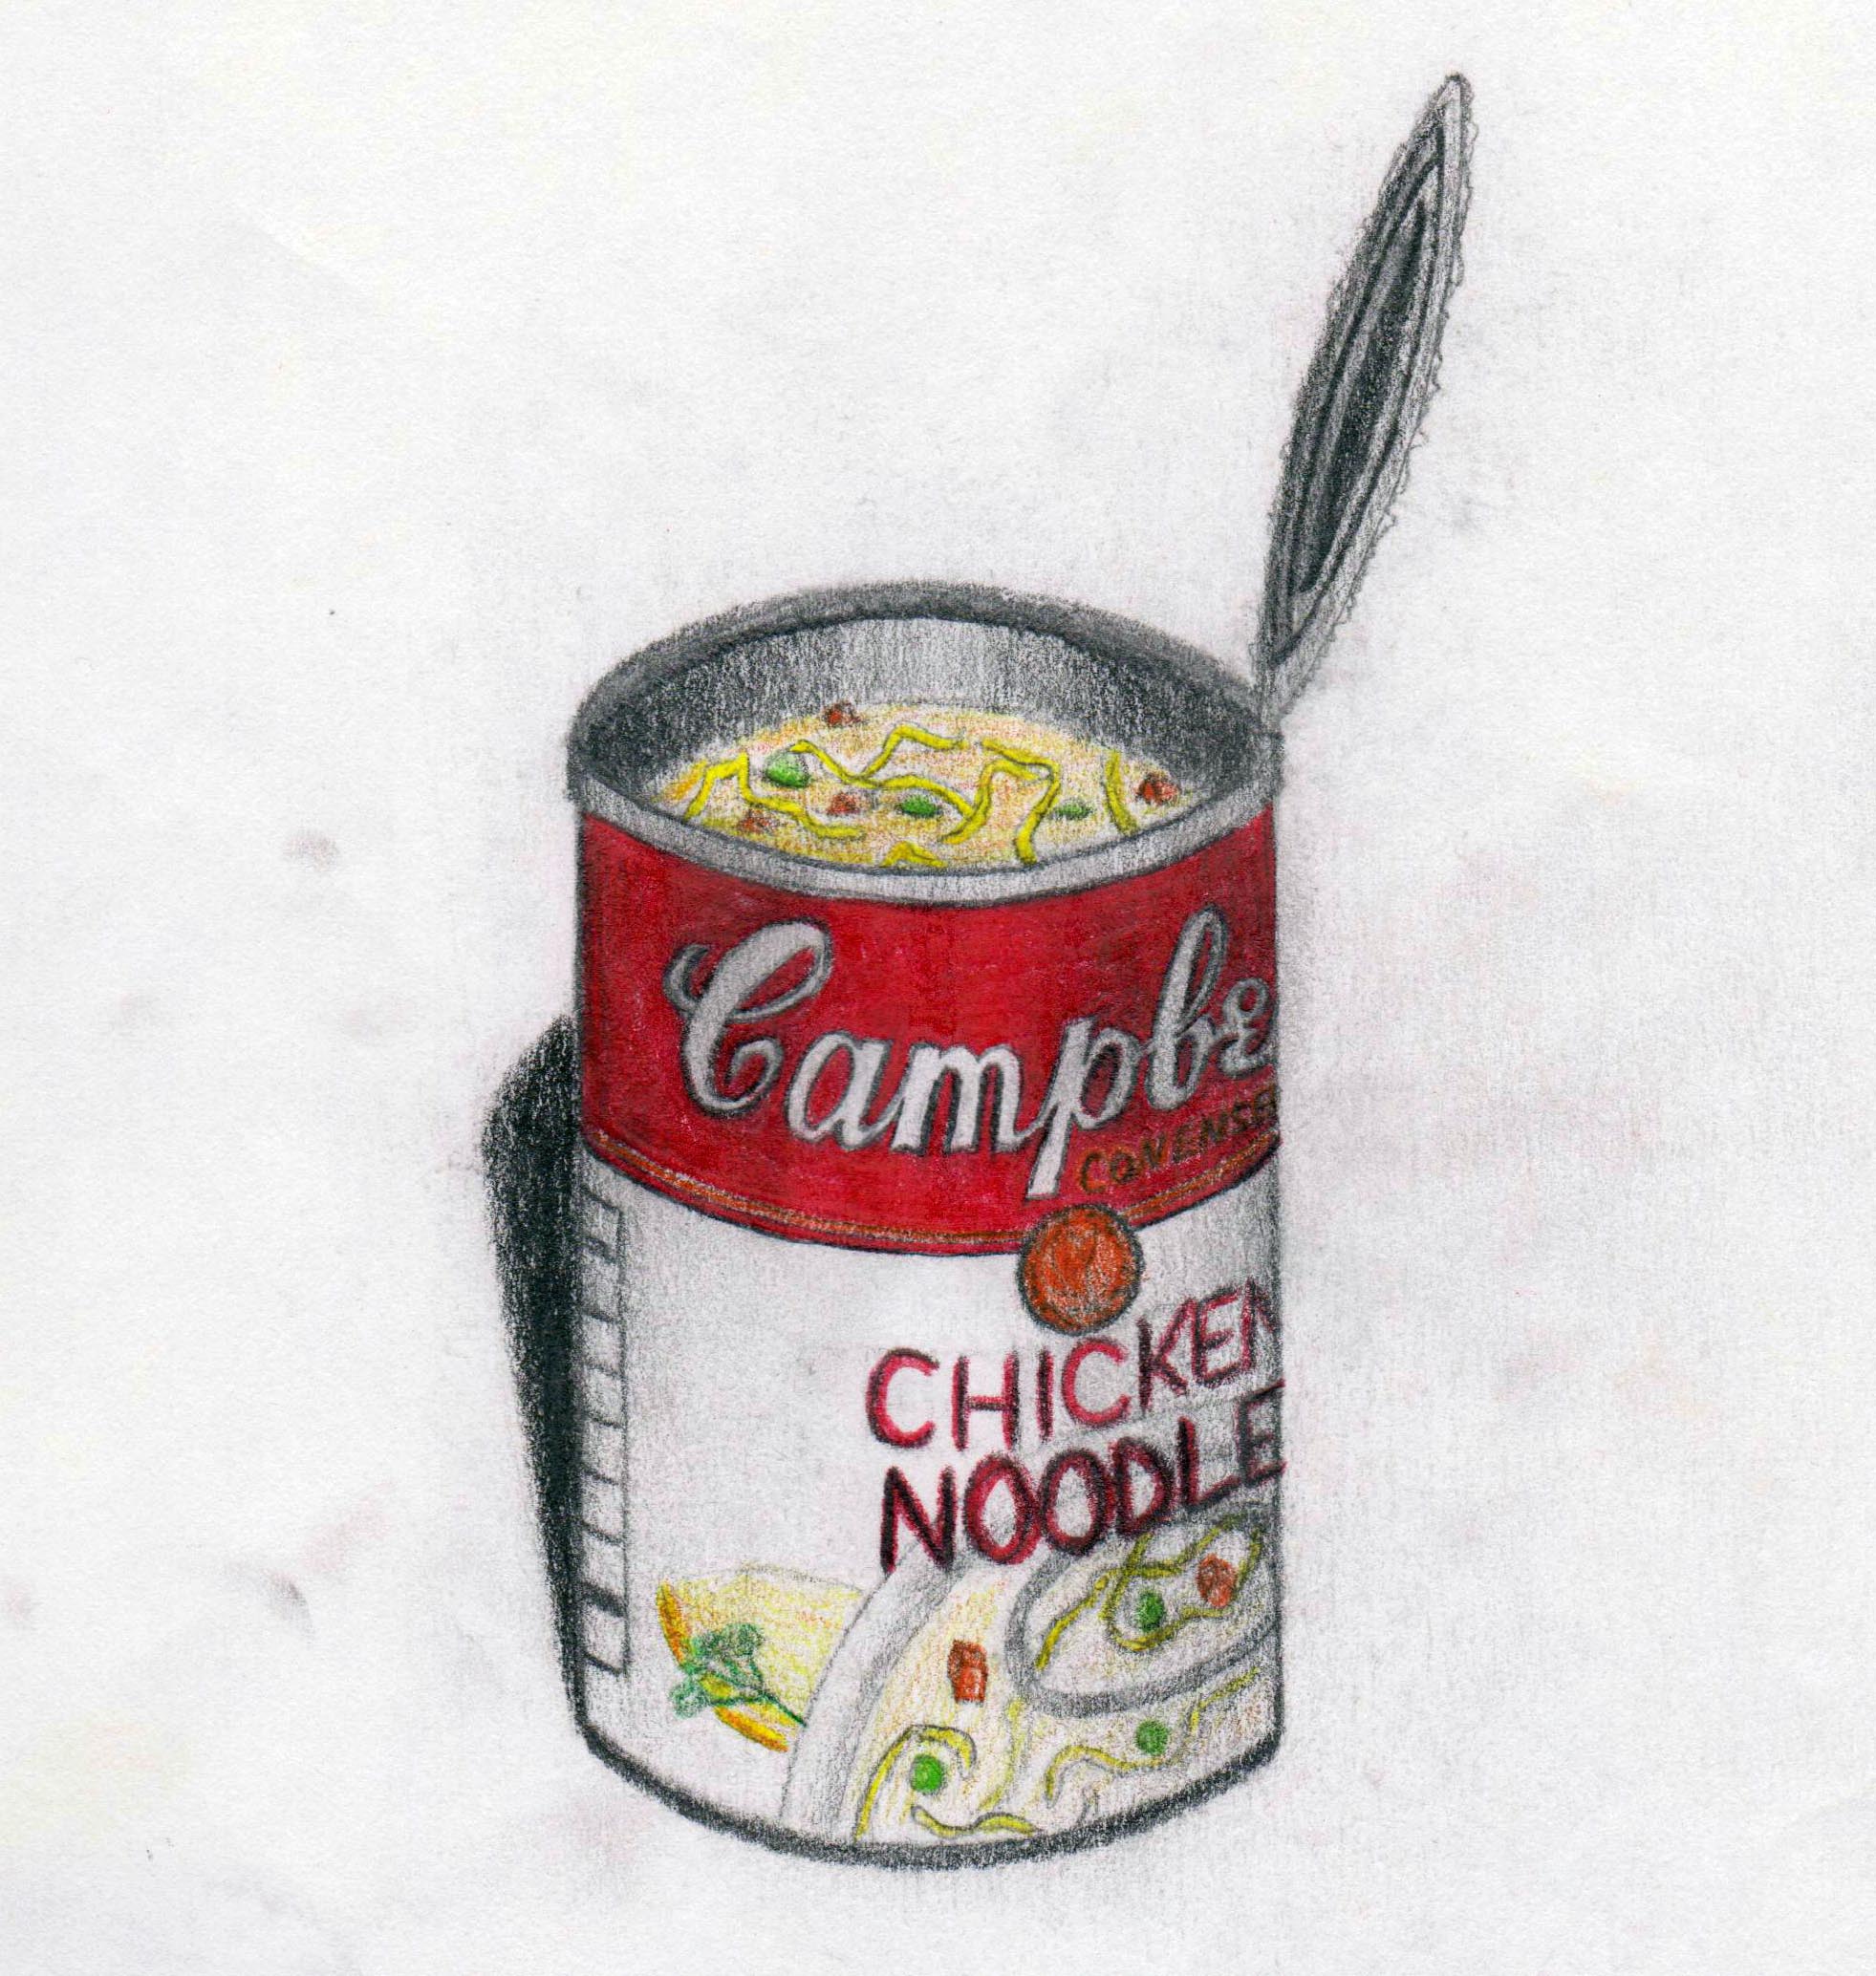 Campbells chicken noodle soup